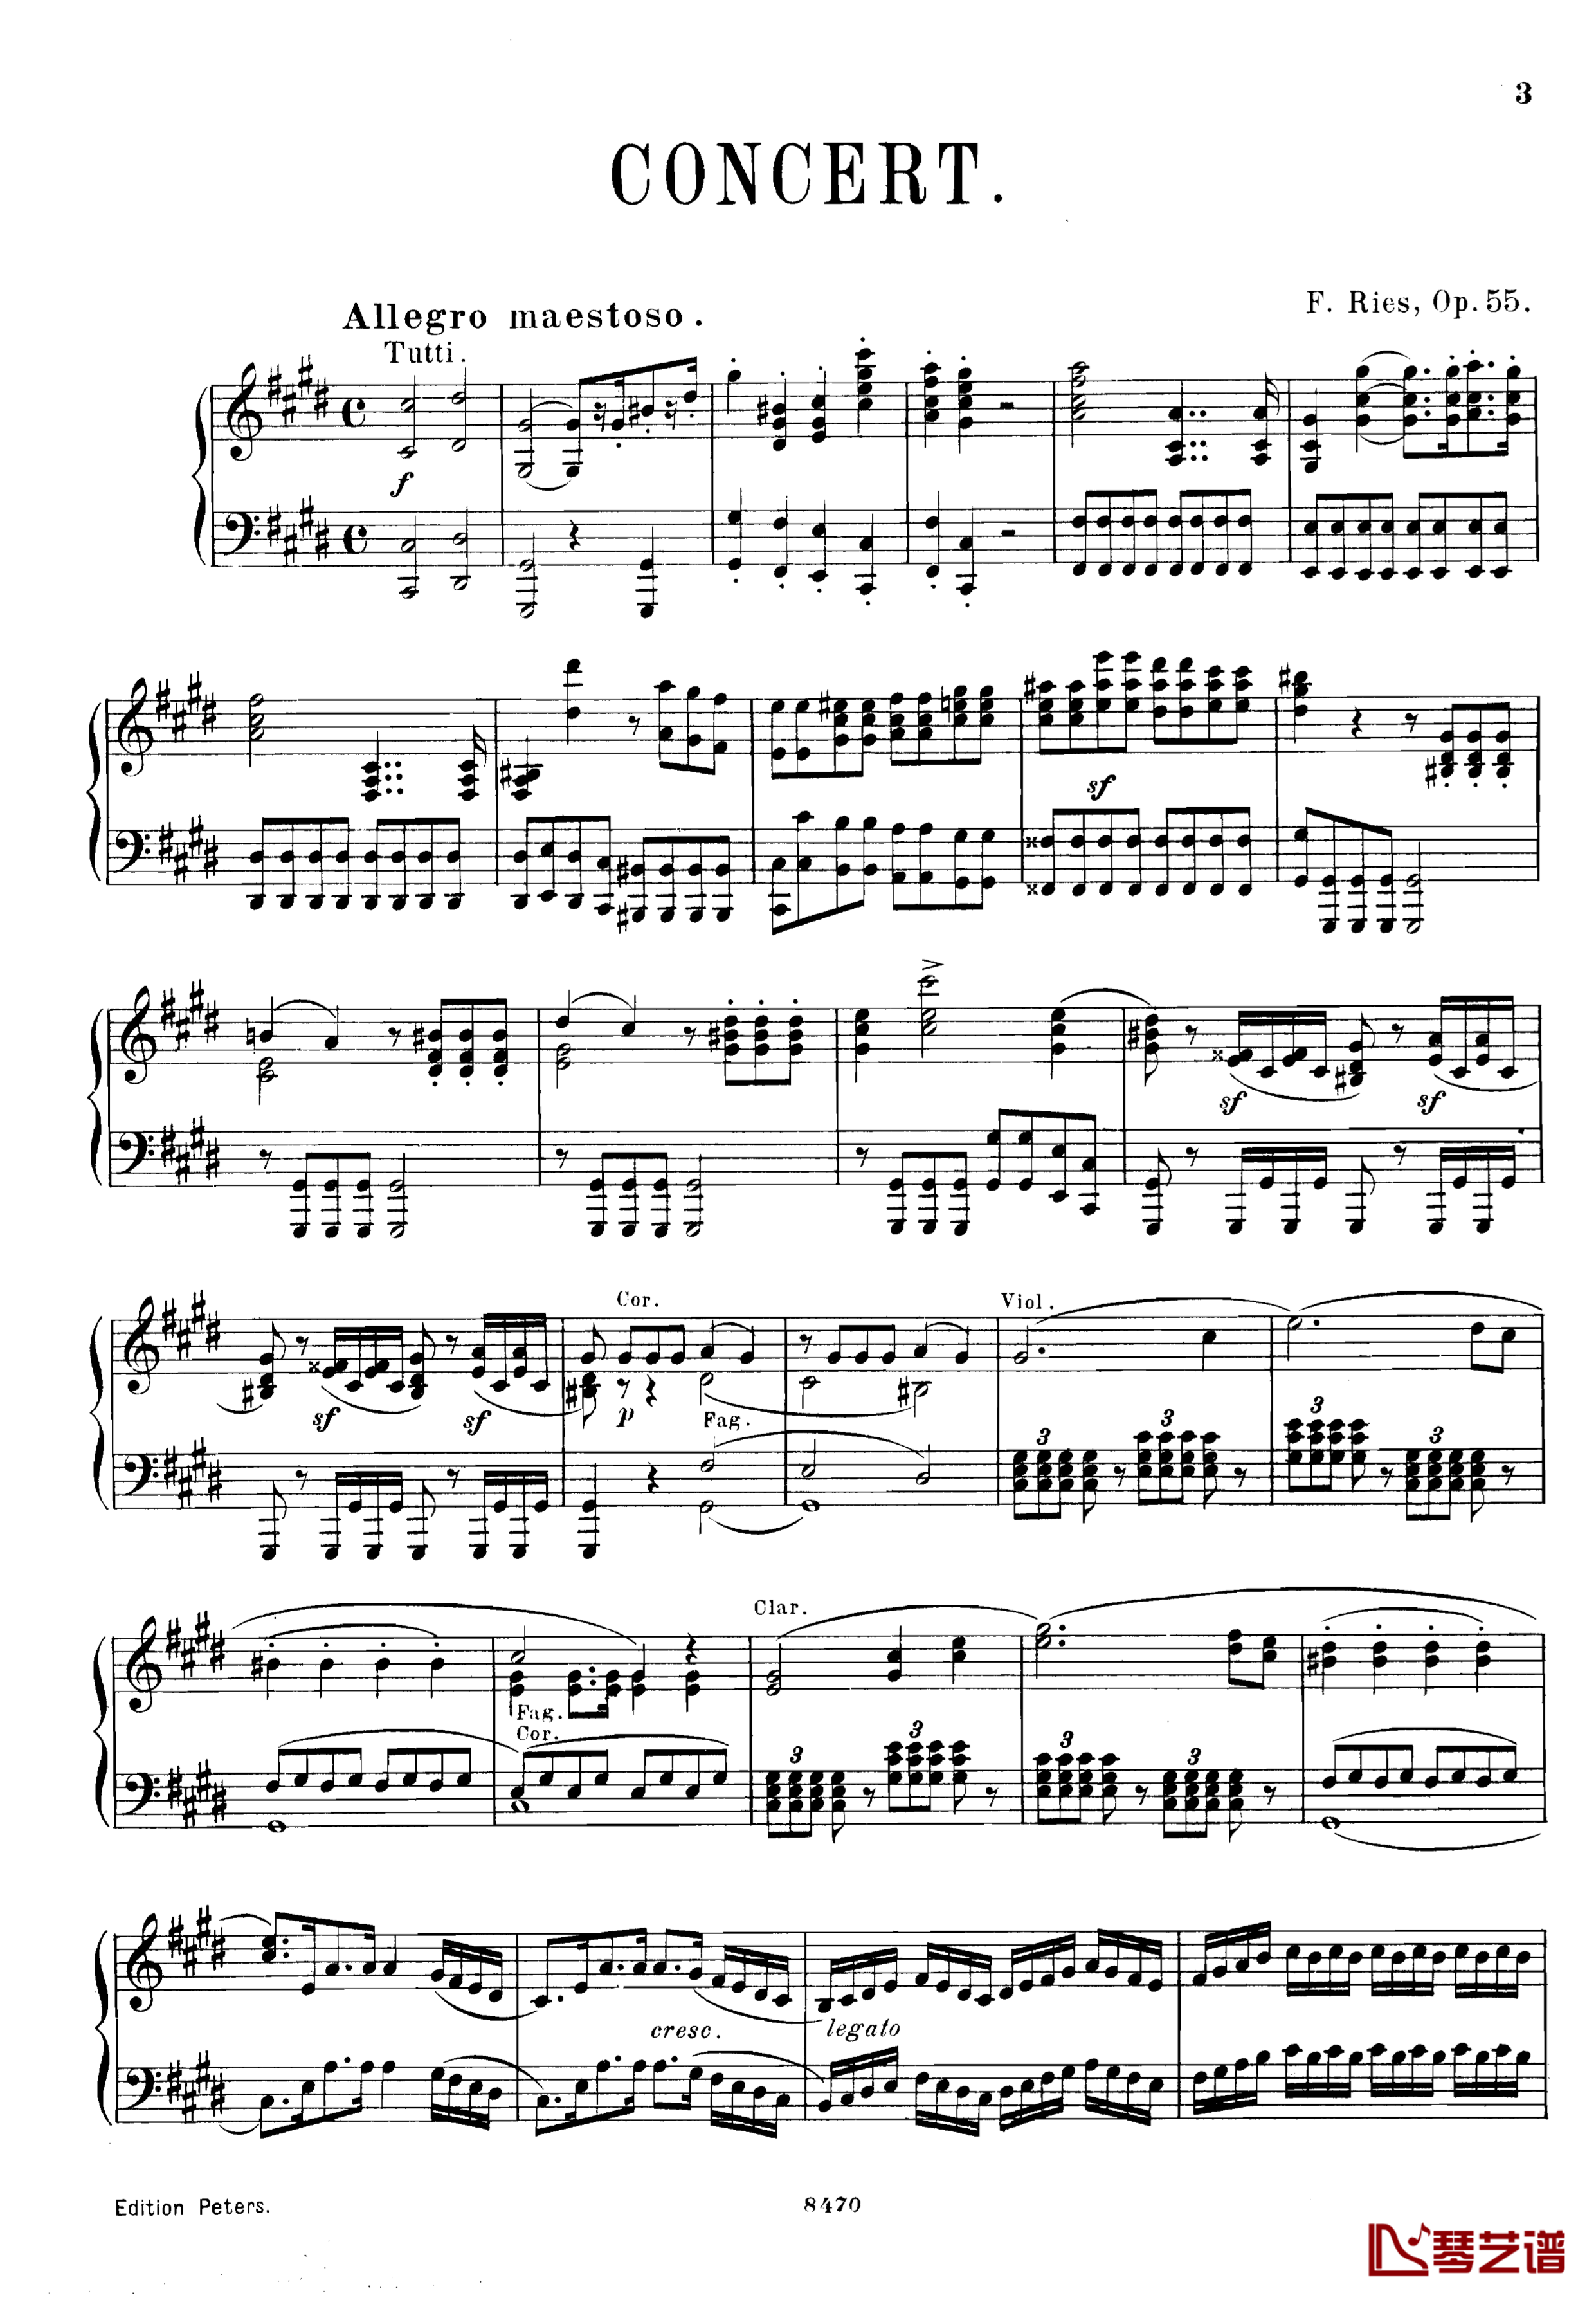 升c小调第三钢琴协奏曲Op.55钢琴谱-克里斯蒂安-里斯3